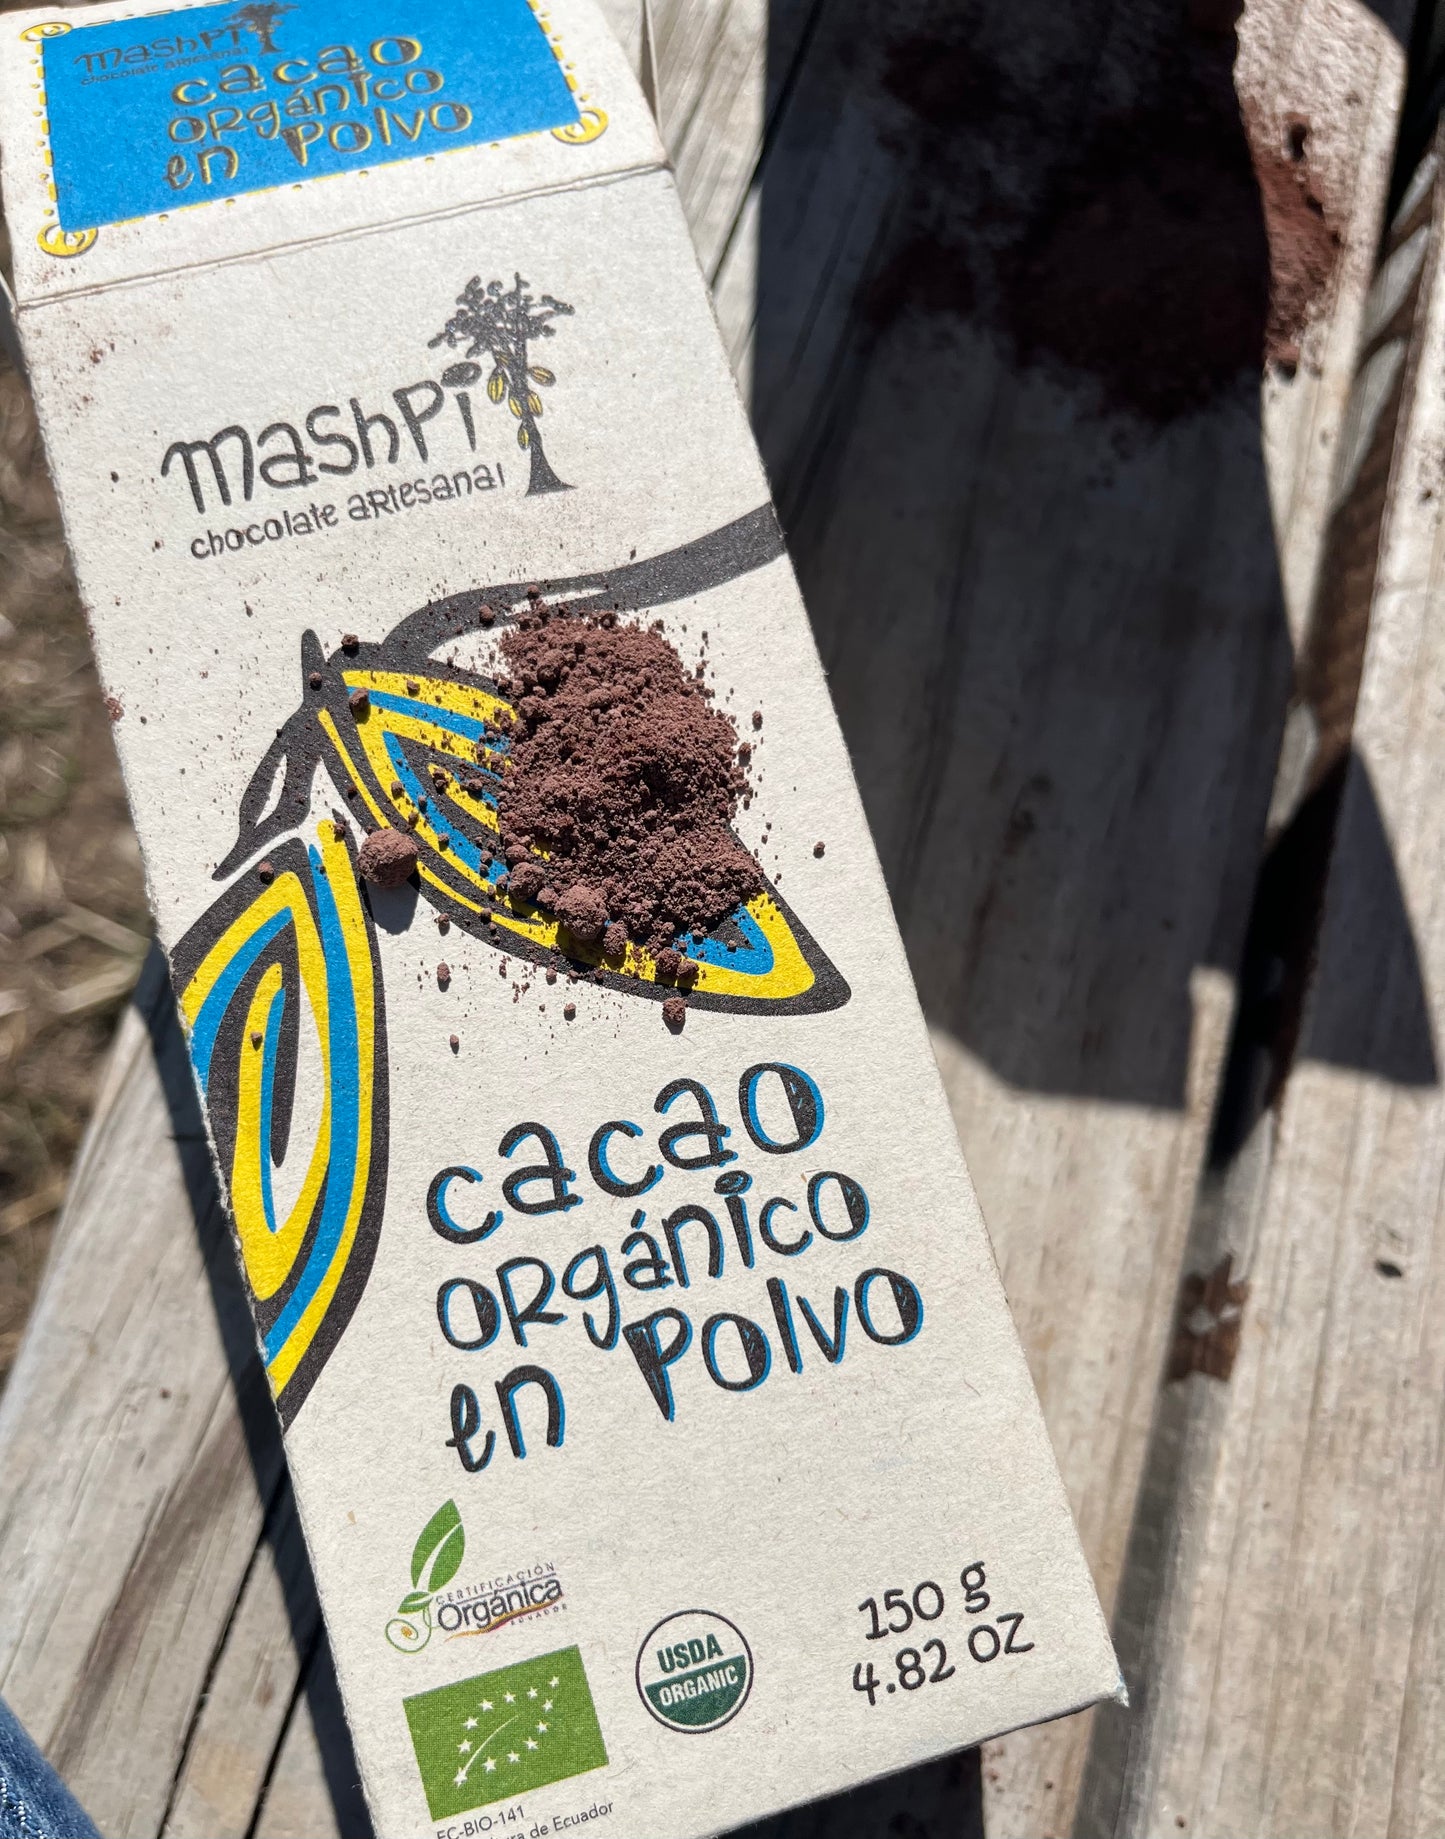 Mashpi organic cacao powder